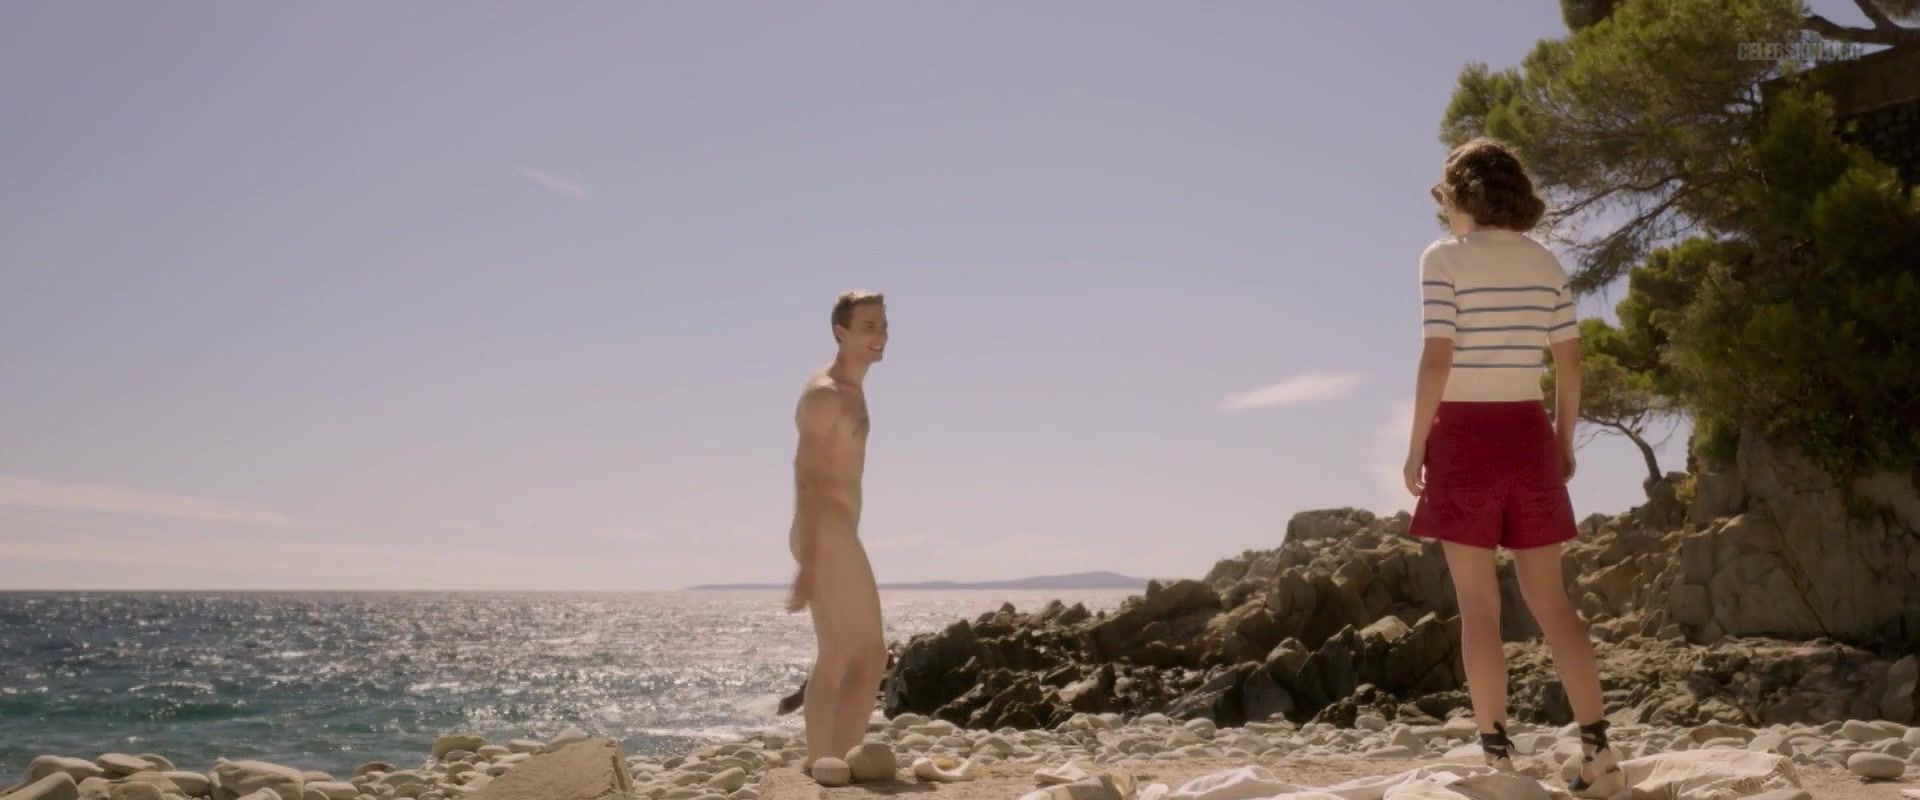 Porn Amateur Natalie Portman naked - Planetarium (2016) Legs - 2